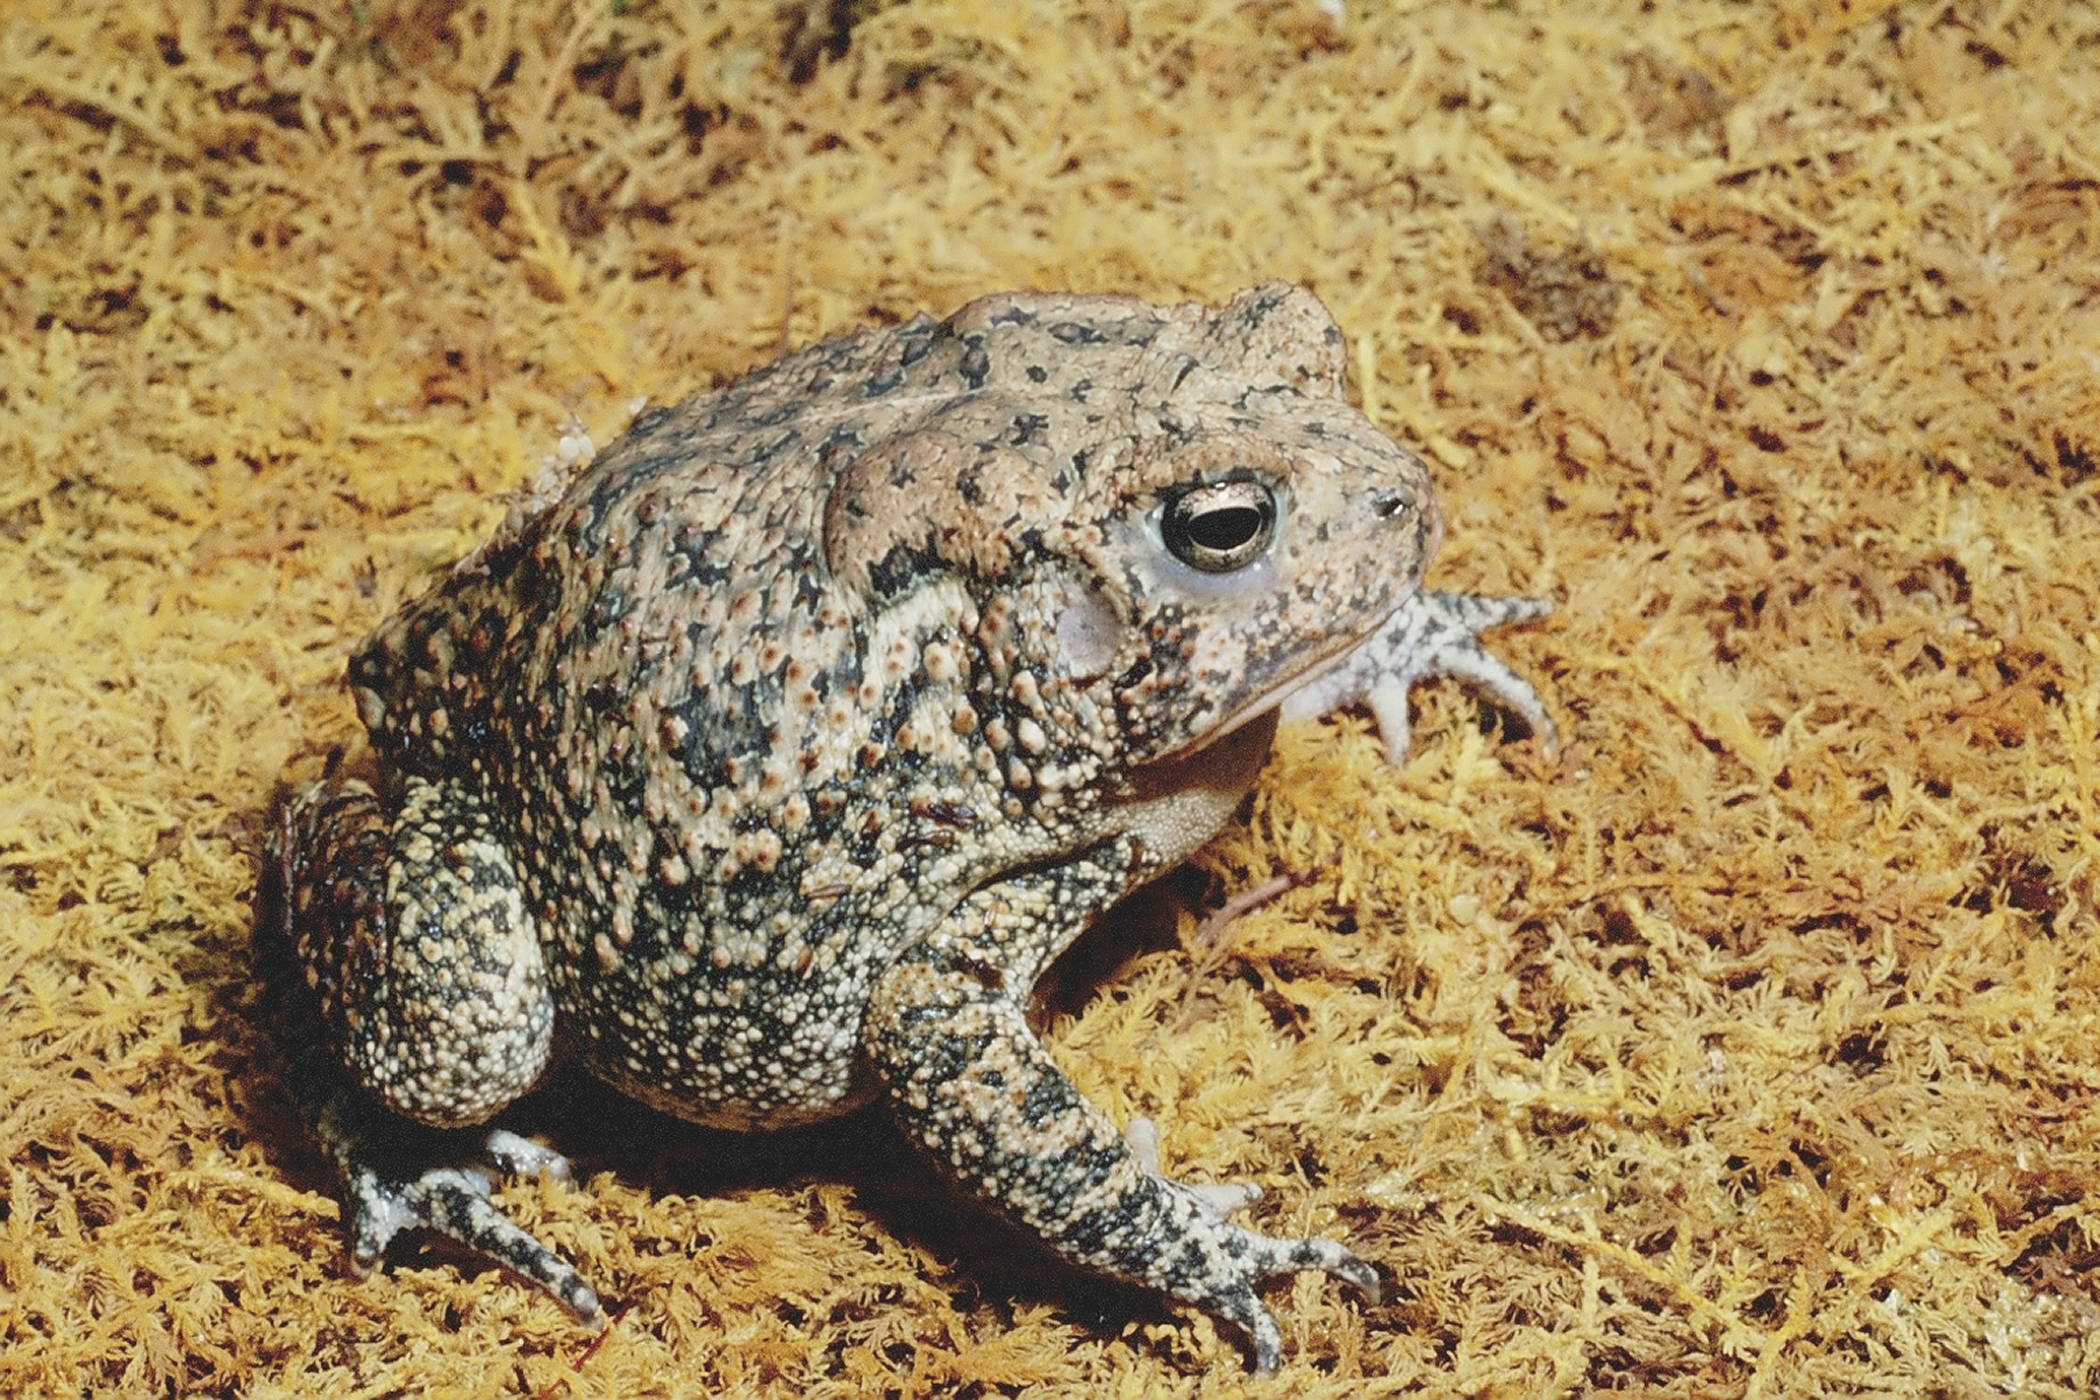 Adult Houston Toad